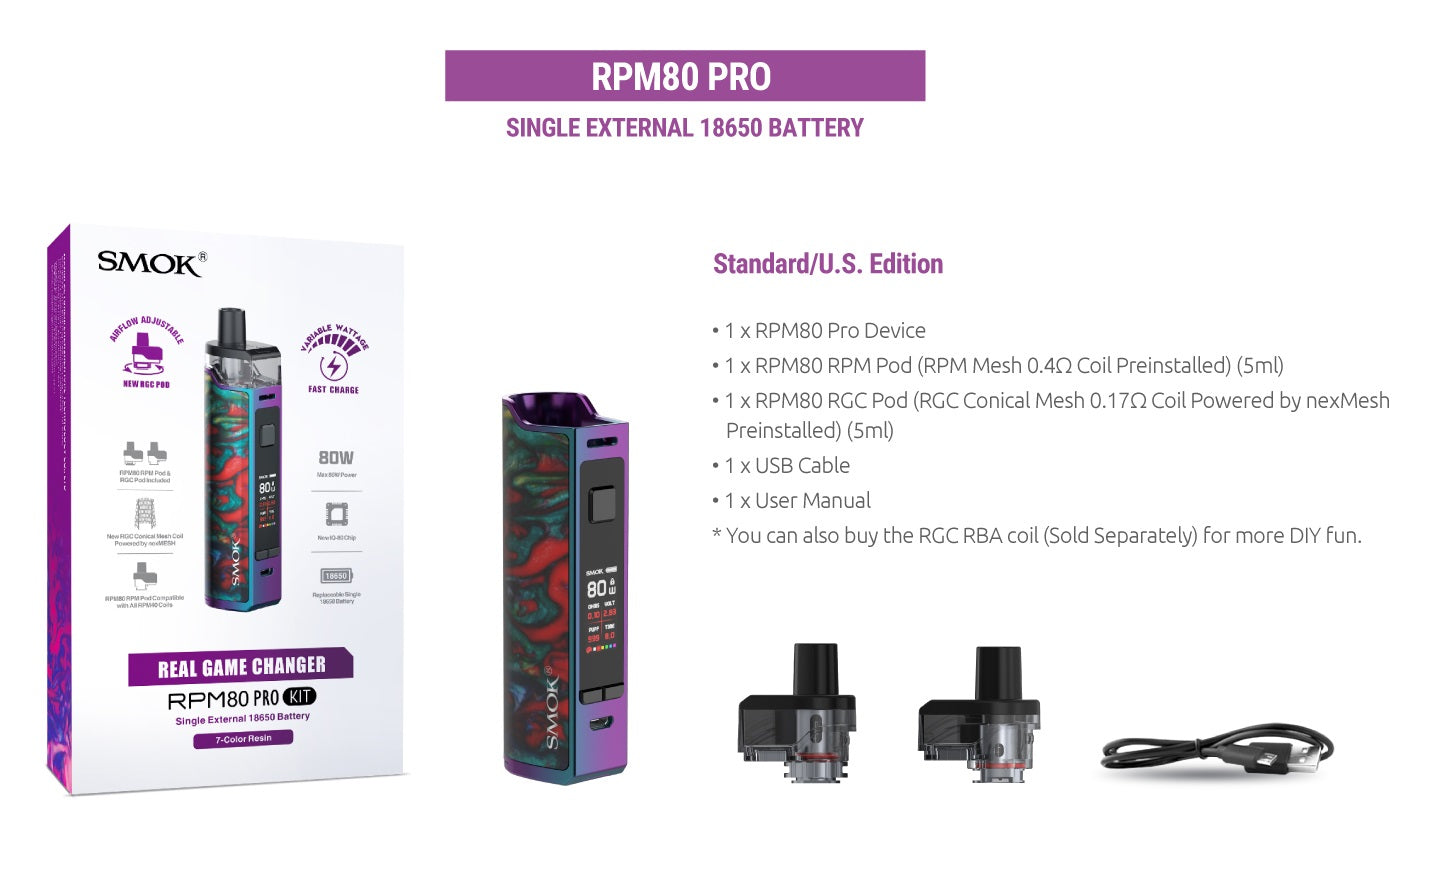 Smok RPM80 Pro Starter Kit Abu Dhabi & Dubai UAE, Ras Al Khaima